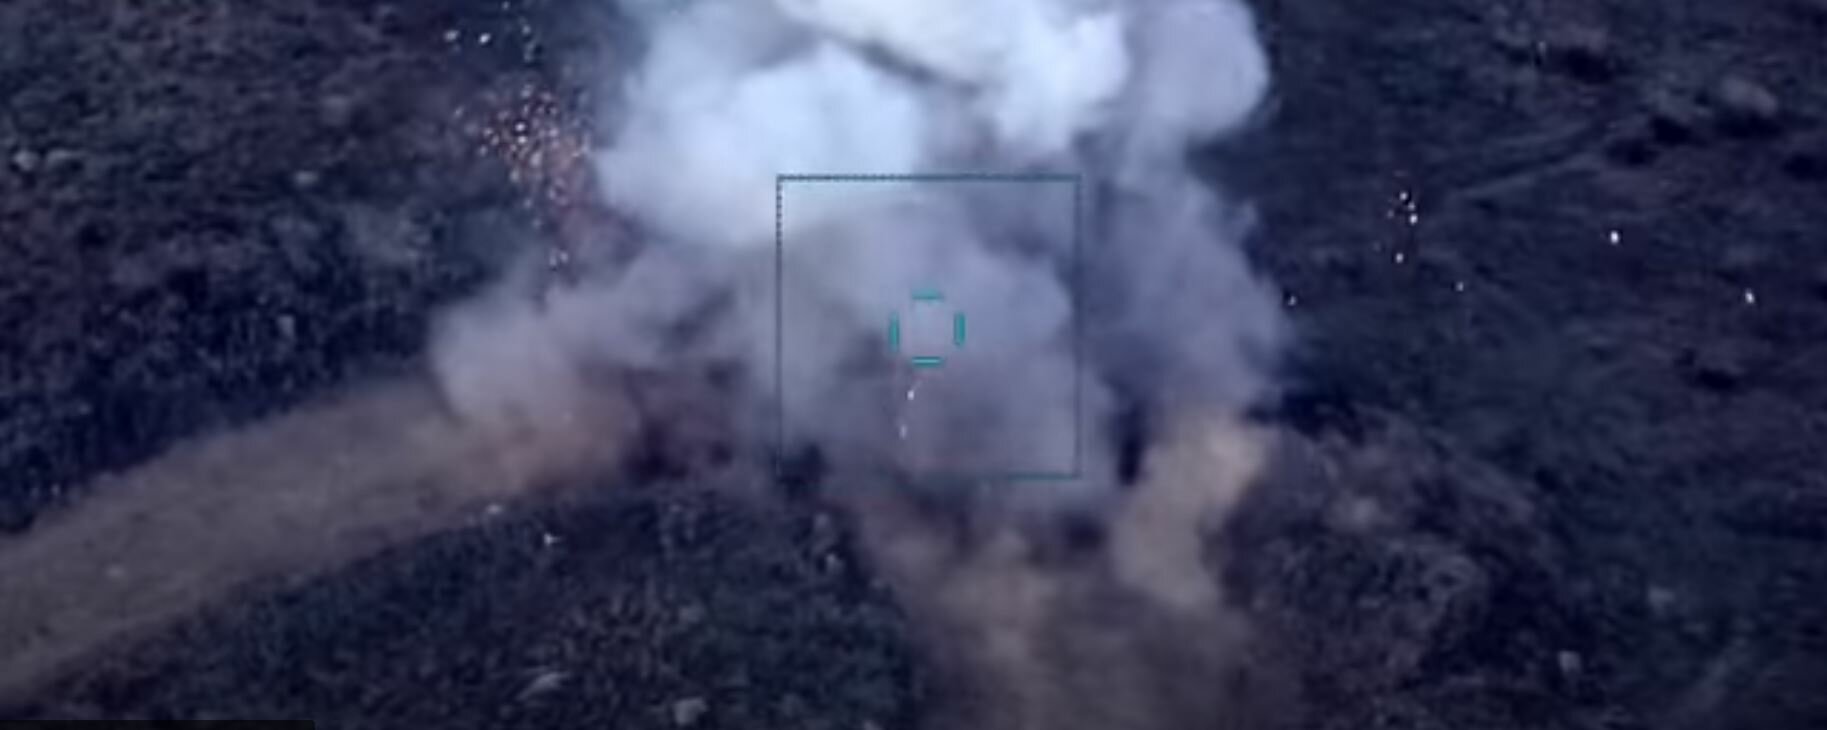 Армия Азербайджана зафиксировала на видео, как уничтожает армянскую бронетехнику и склады с боеприпасами